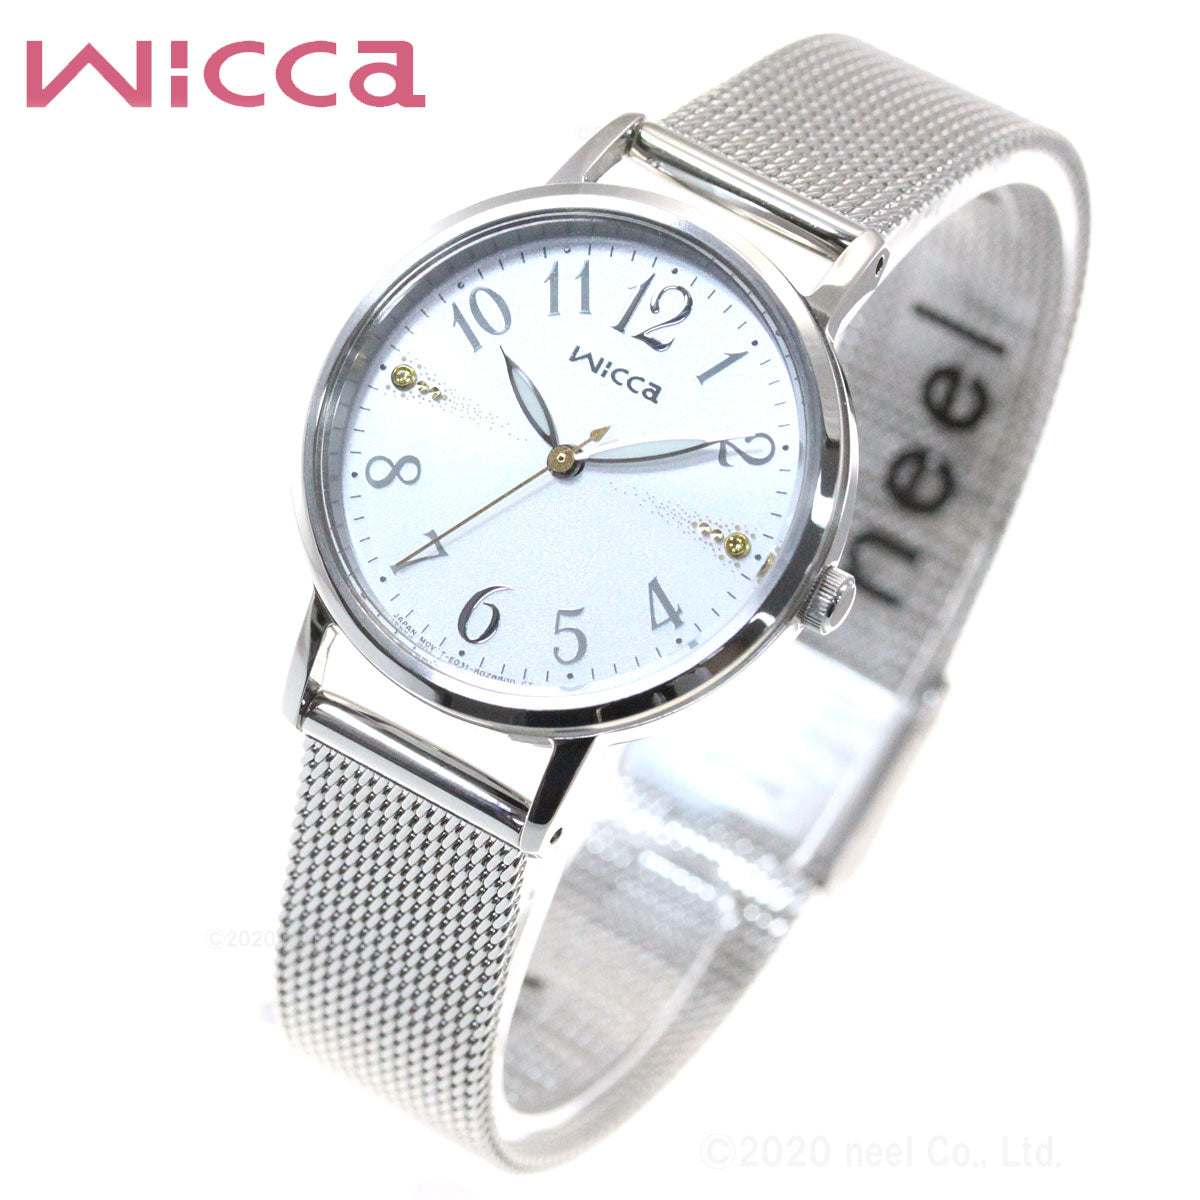 ウィッカ シチズン wicca ソーラーテック 腕時計 レディース KP5-115-11